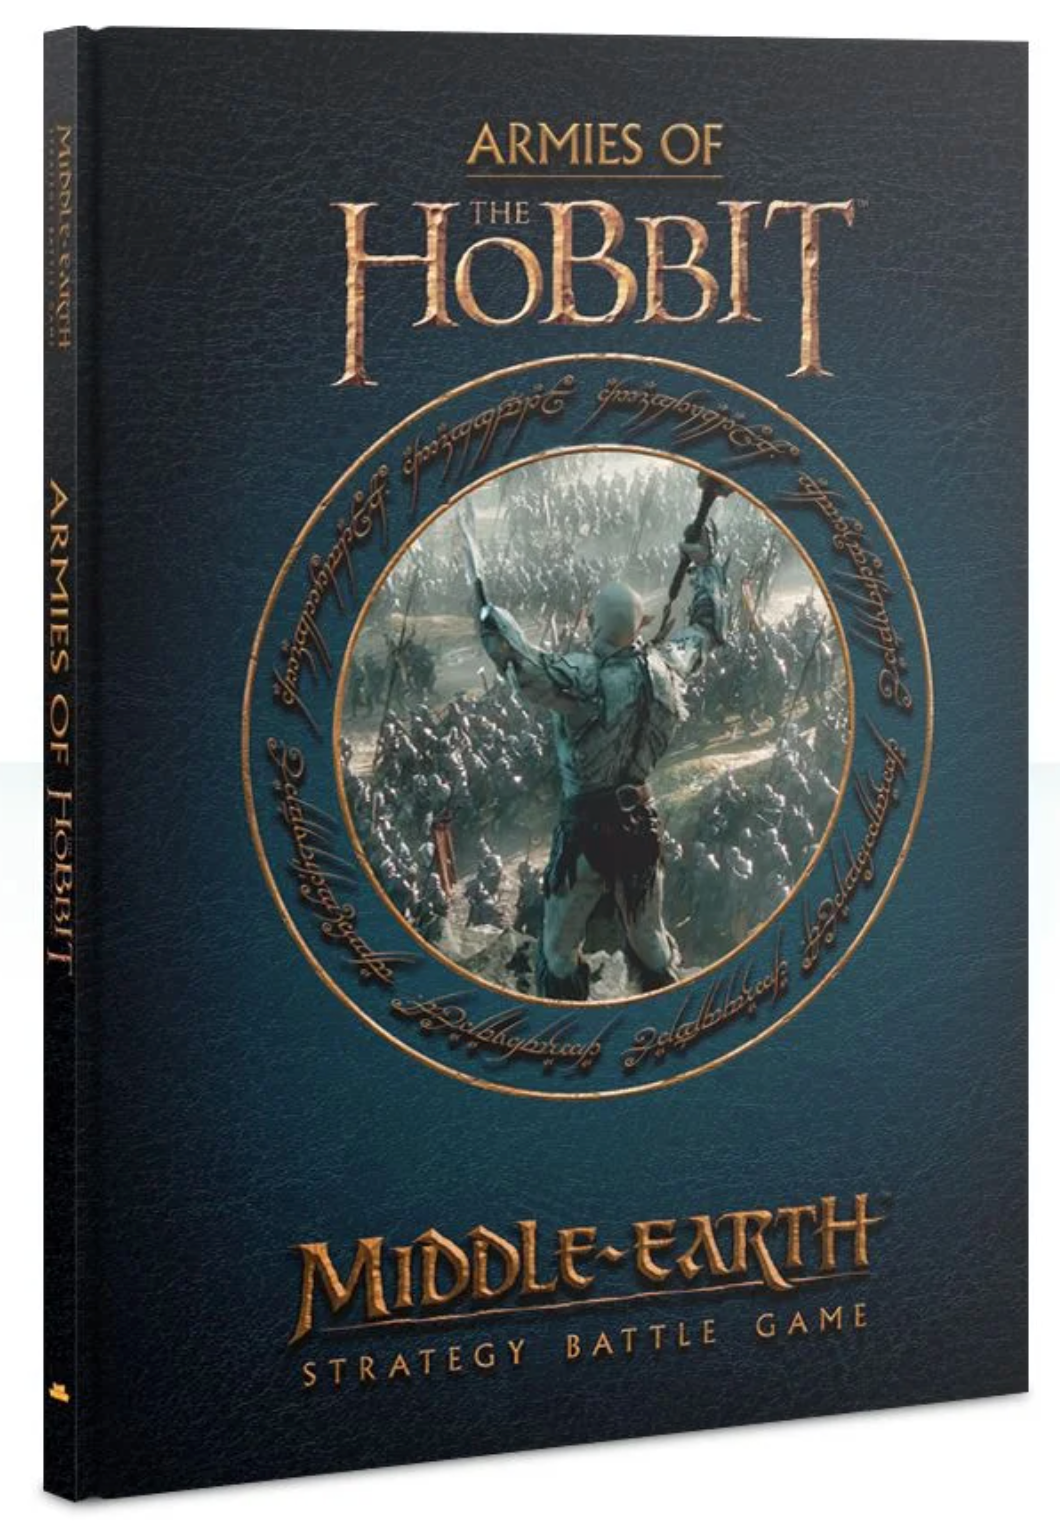 The Hobbit: Armies of The Hobbit